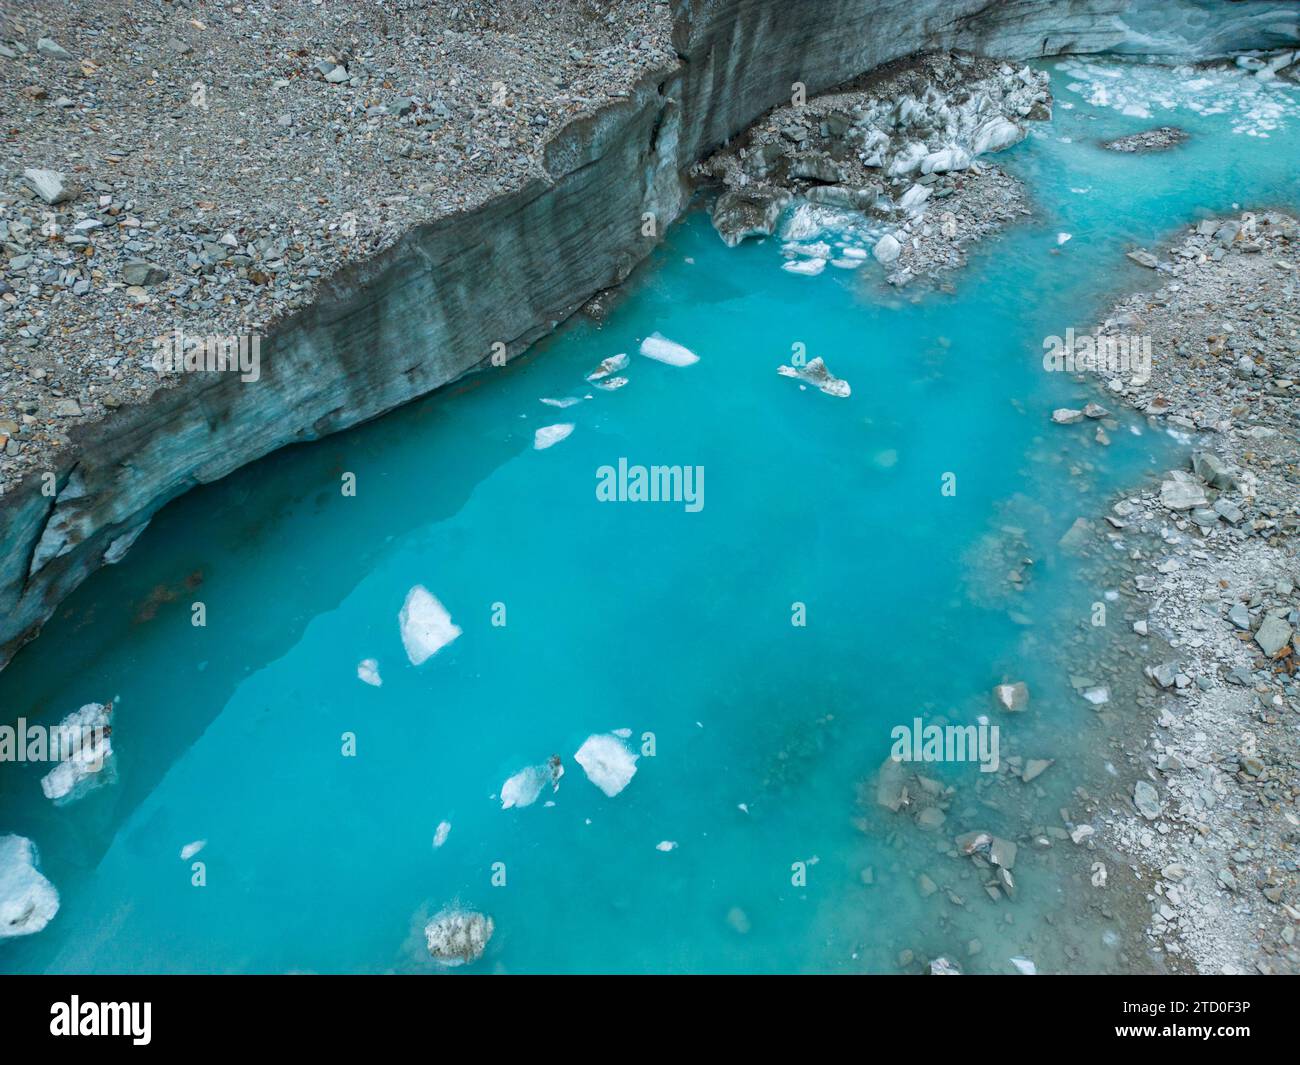 Un vivace fiume glaciale turchese scorre attraverso un paesaggio roccioso con blocchi di ghiaccio sparsi lungo la superficie dell'acqua. Foto Stock